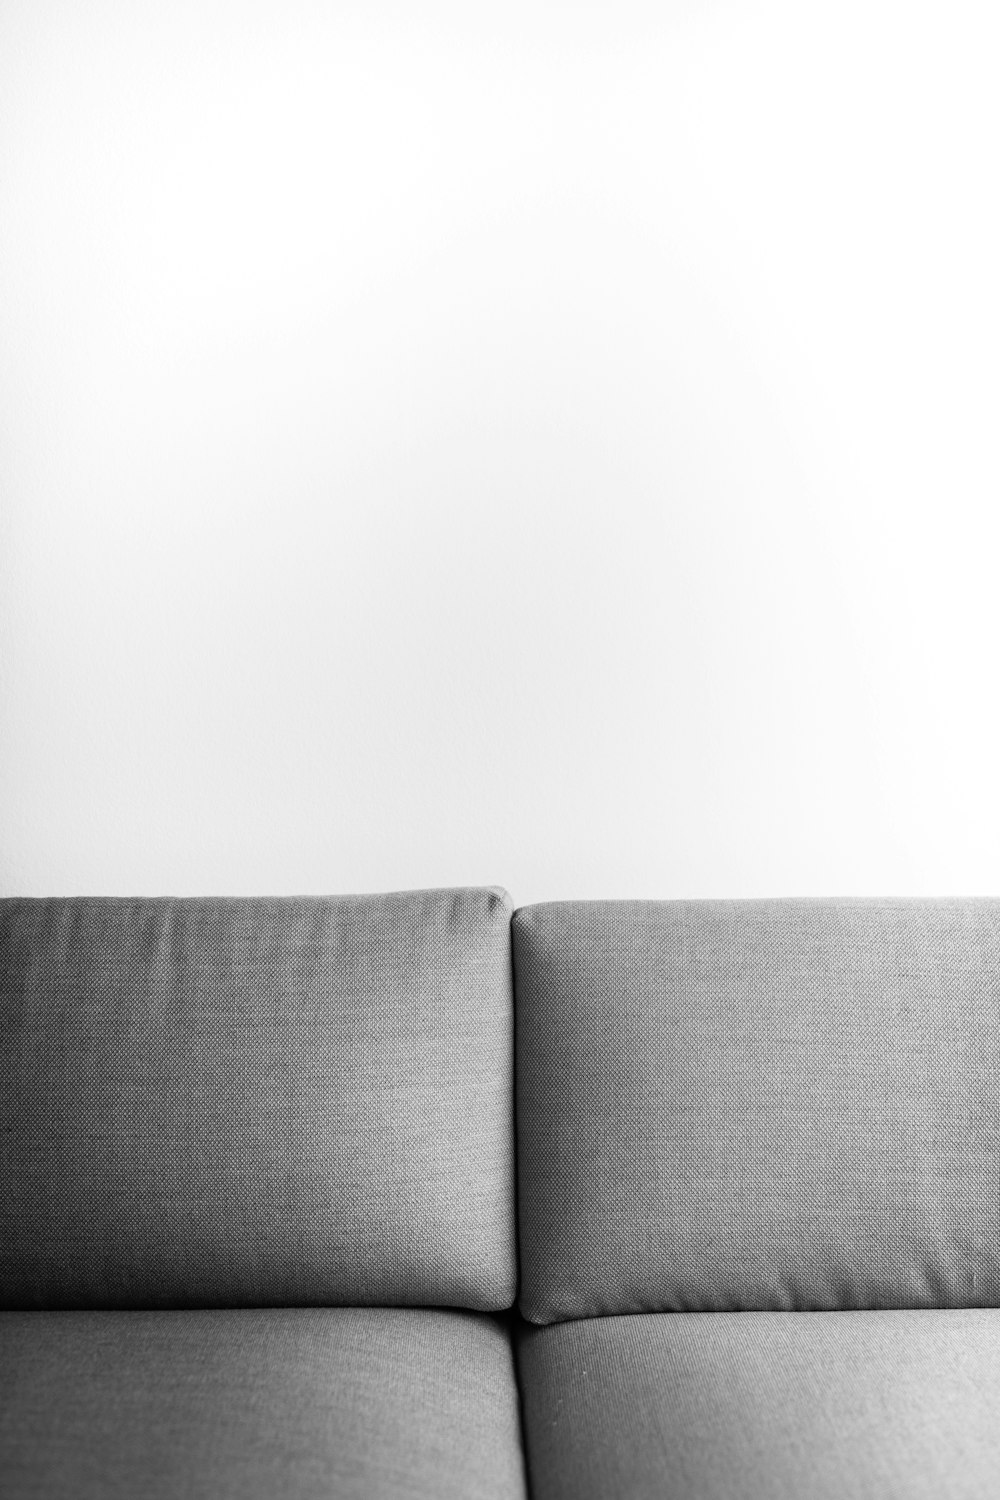 sofá cojín gris al lado de la pared blanca